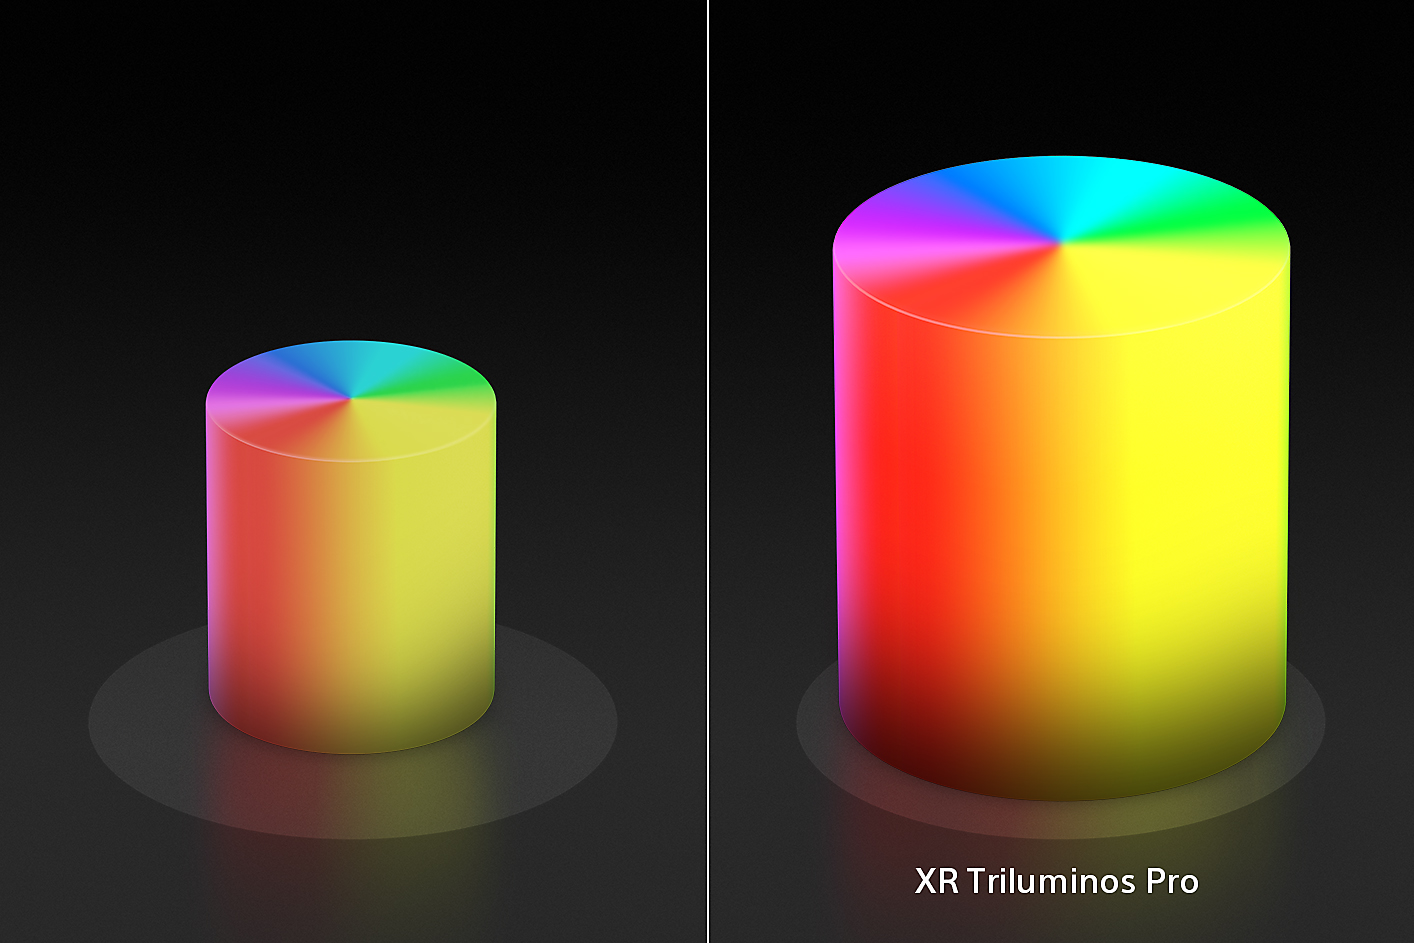 شاشة منقسمة تعرض مخروطَين ملونين على شكل شمعة، أحدهما أصغر على اليسار والآخر أكبر على اليمين مع ألوان وتركيبات مُحسّنة لتقنية XR Triluminos Pro